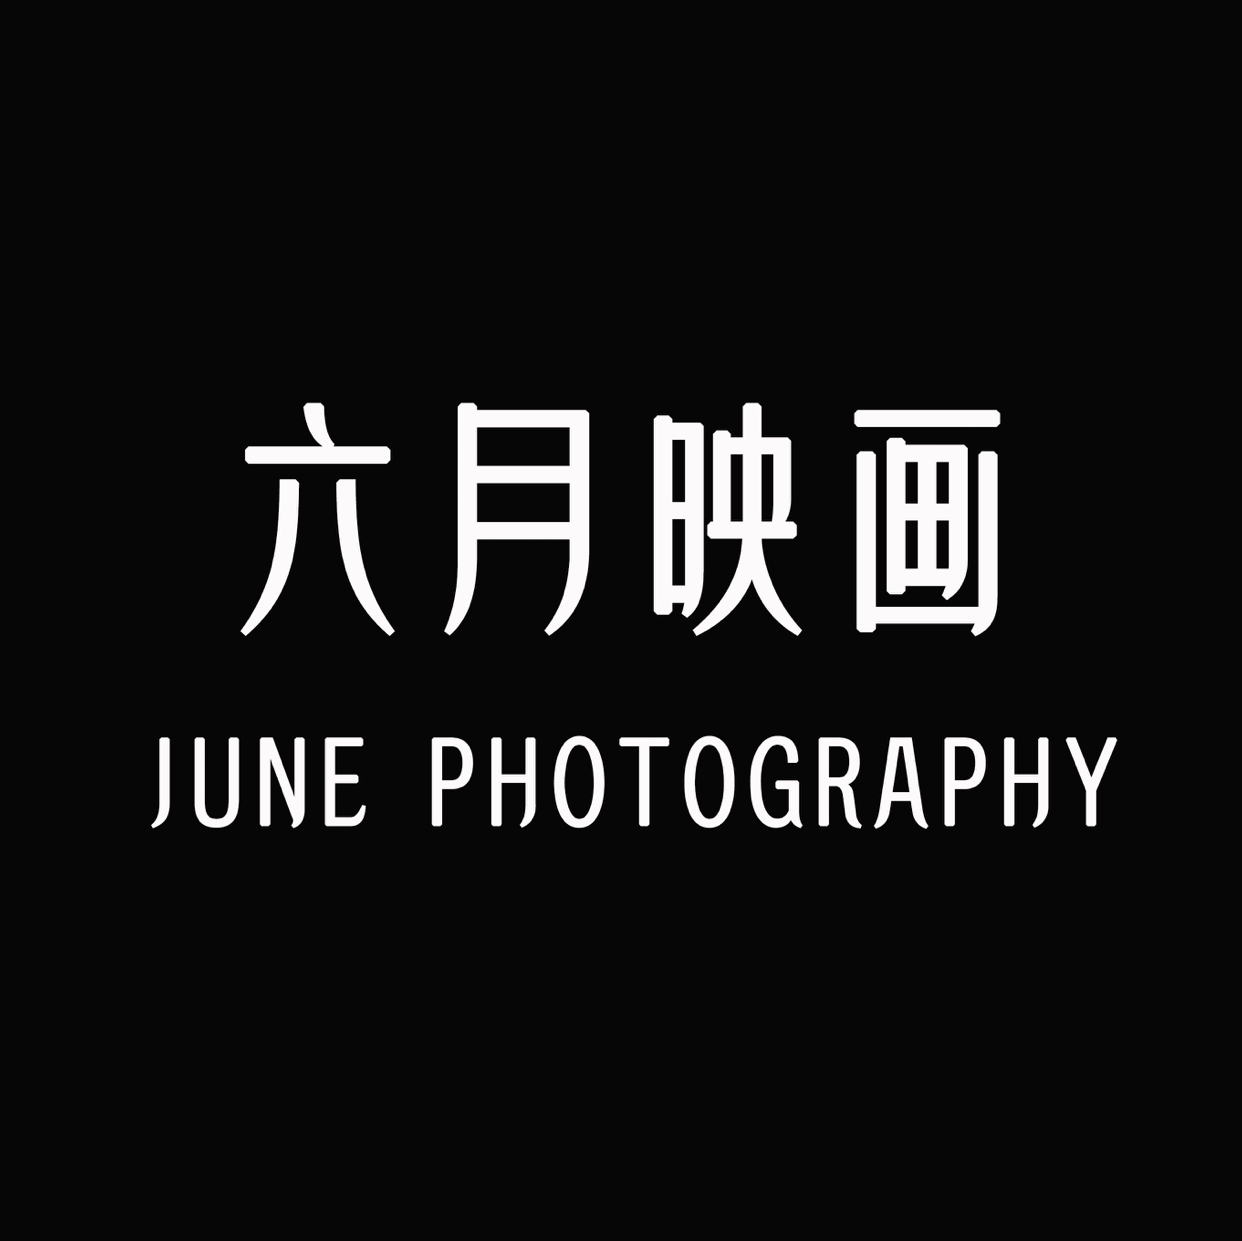 渭南六月映画摄影工作室